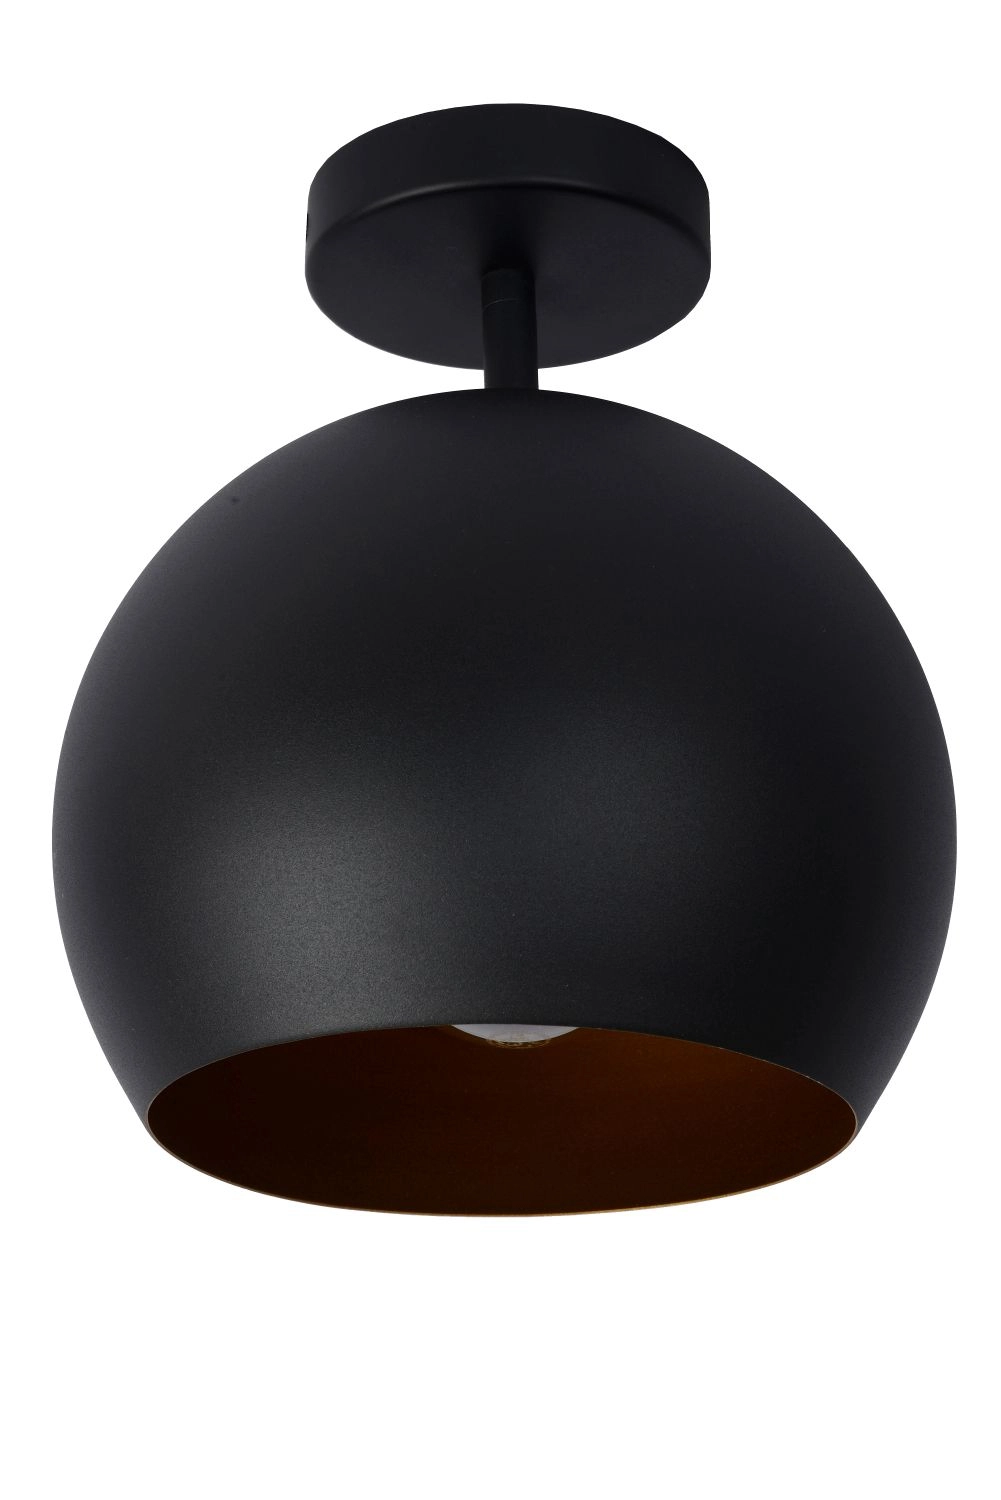 LU 45150/01/30 Lucide BINK - Flush ceiling light - Ø 24,5 cm - 1xE27 - Black